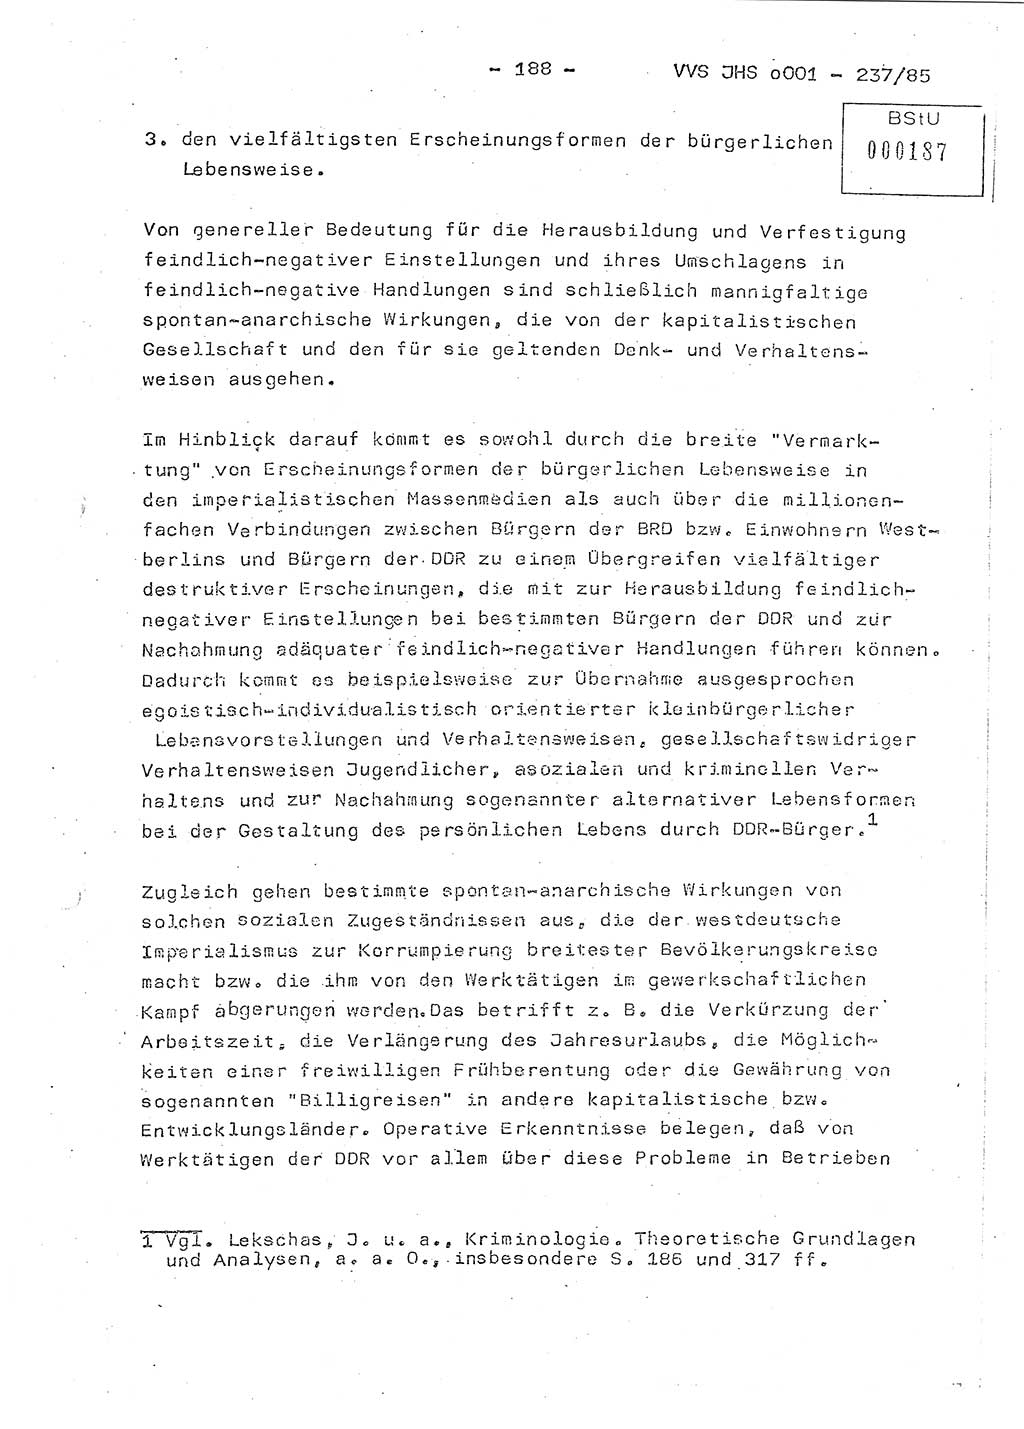 Dissertation Oberstleutnant Peter Jakulski (JHS), Oberstleutnat Christian Rudolph (HA Ⅸ), Major Horst Böttger (ZMD), Major Wolfgang Grüneberg (JHS), Major Albert Meutsch (JHS), Ministerium für Staatssicherheit (MfS) [Deutsche Demokratische Republik (DDR)], Juristische Hochschule (JHS), Vertrauliche Verschlußsache (VVS) o001-237/85, Potsdam 1985, Seite 188 (Diss. MfS DDR JHS VVS o001-237/85 1985, S. 188)